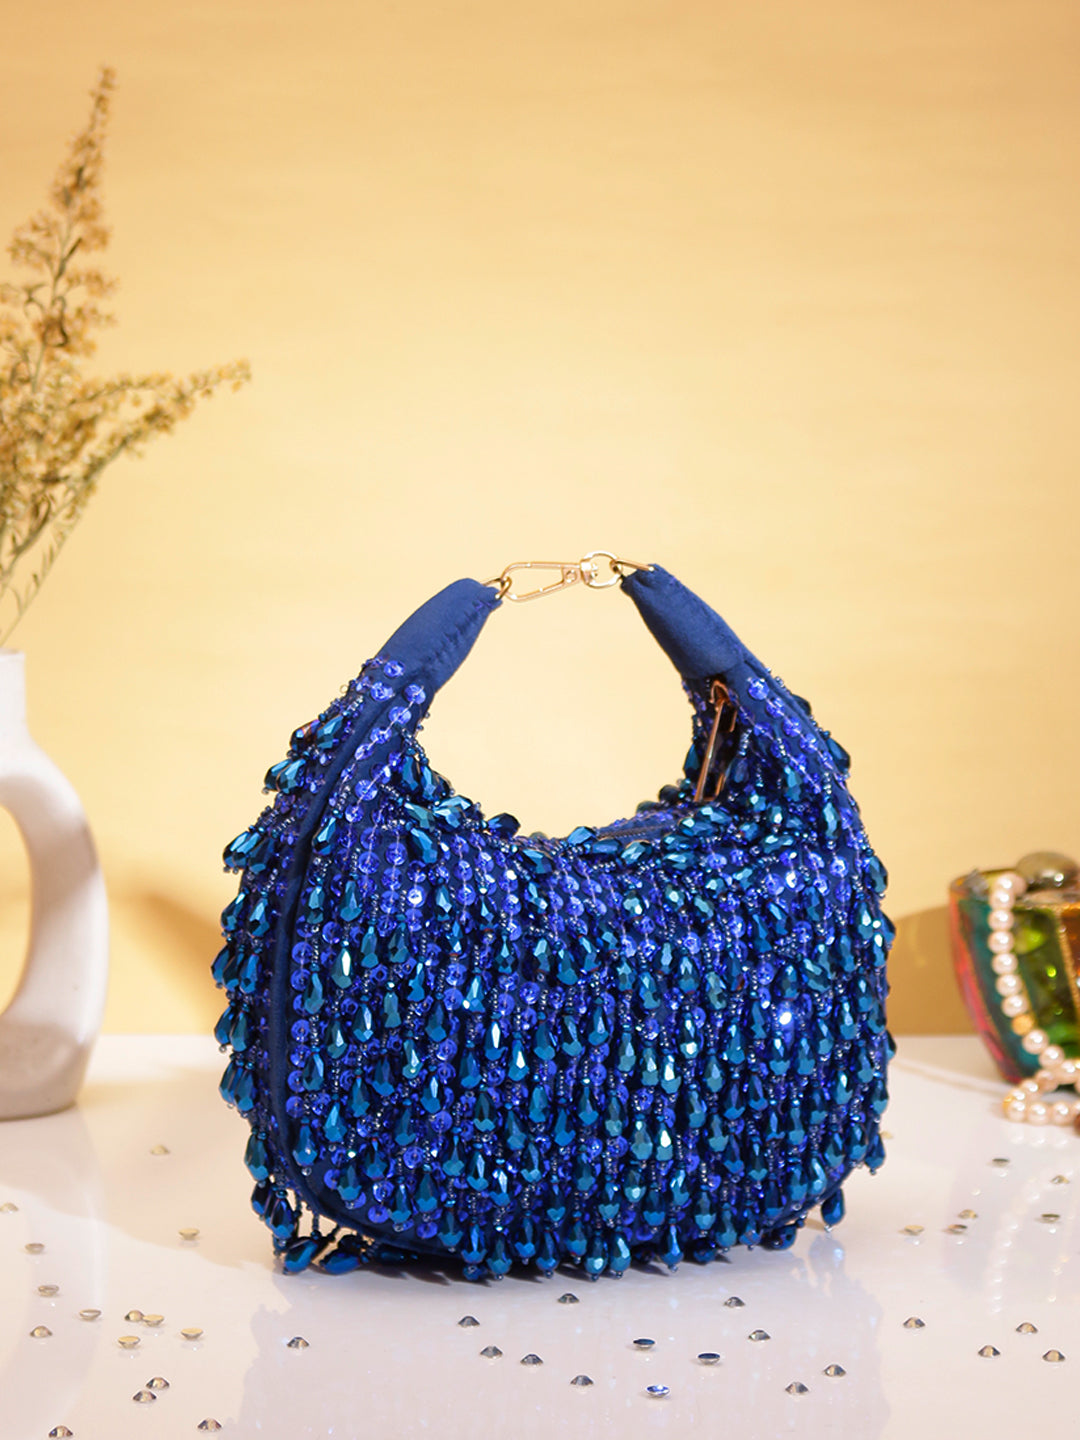 Swisni luxury blue crystal clutch bag